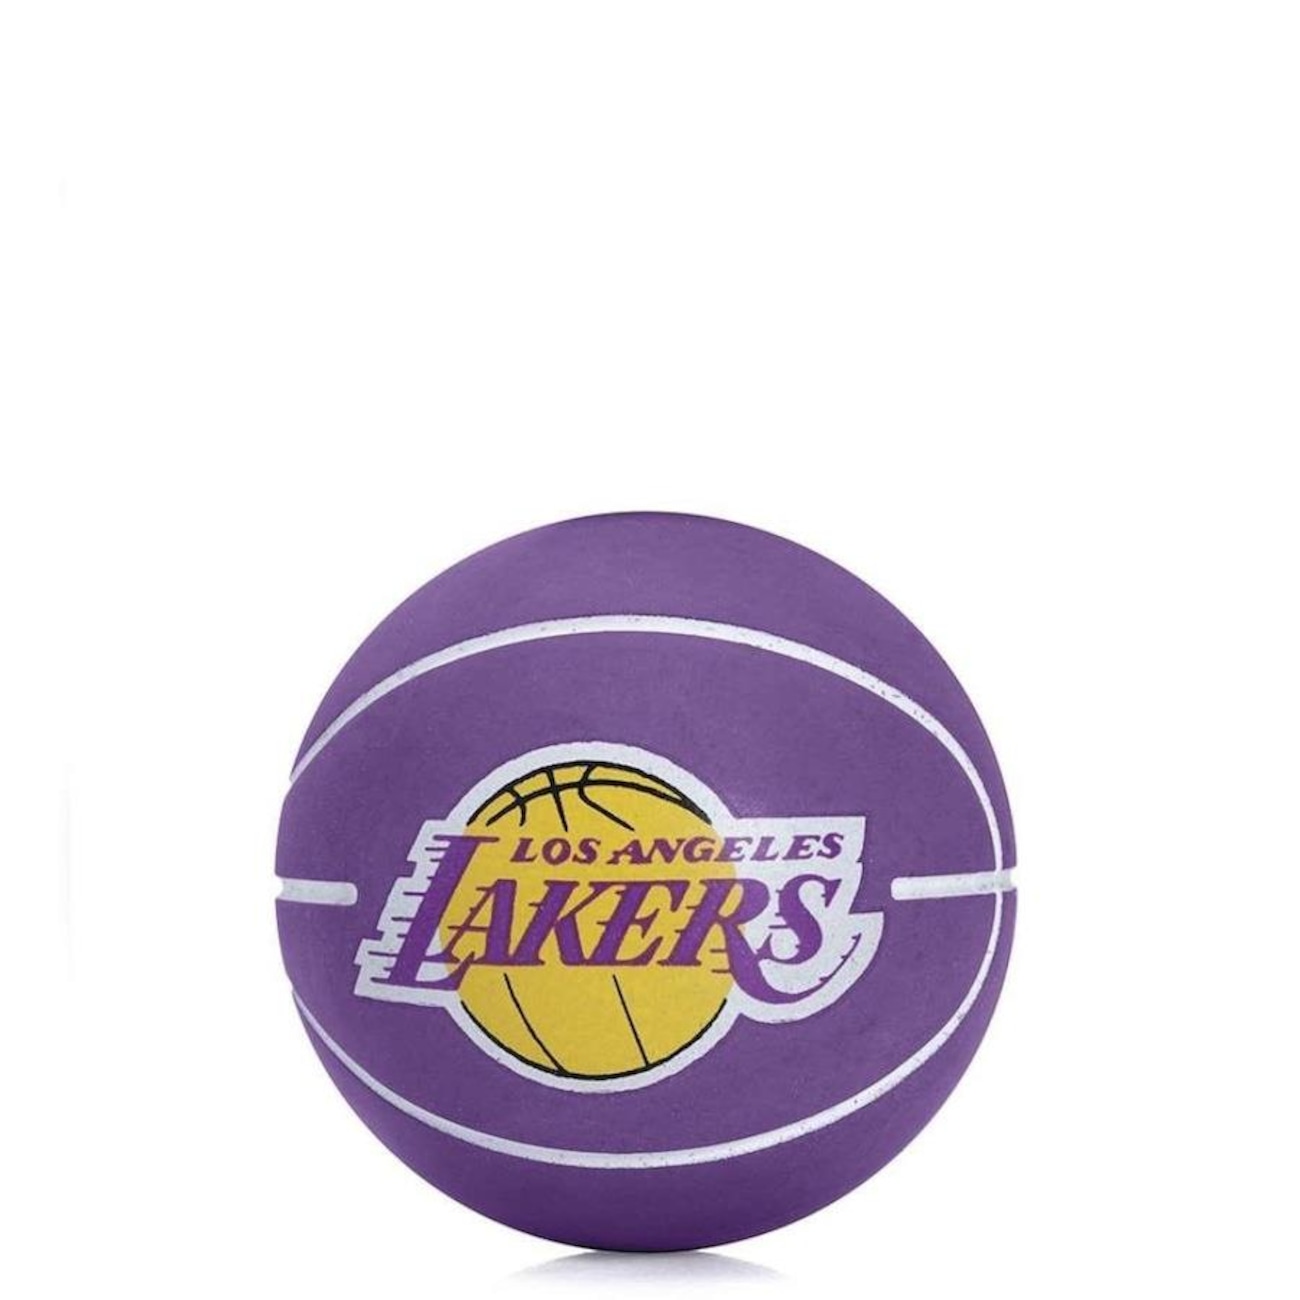 Bola De Basquete Spalding NBA Los Angeles Lakers Amarela - FutFanatics